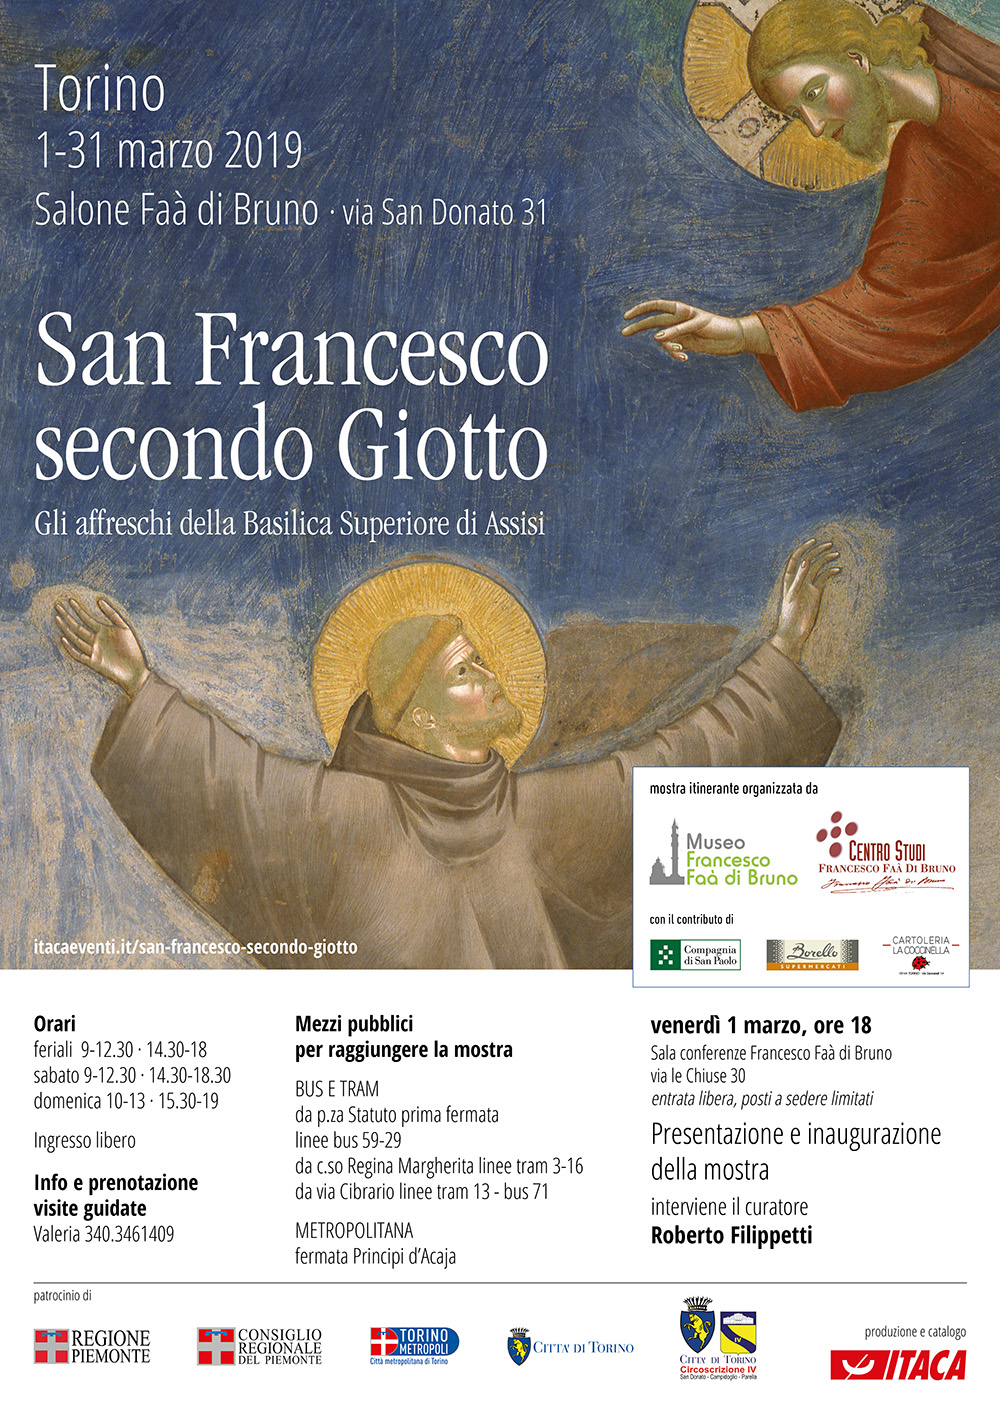 “Una mostra per riscoprire il grande genio di San Francesco attraverso gli affreschi di Giotto” di Domenico Bonvegna